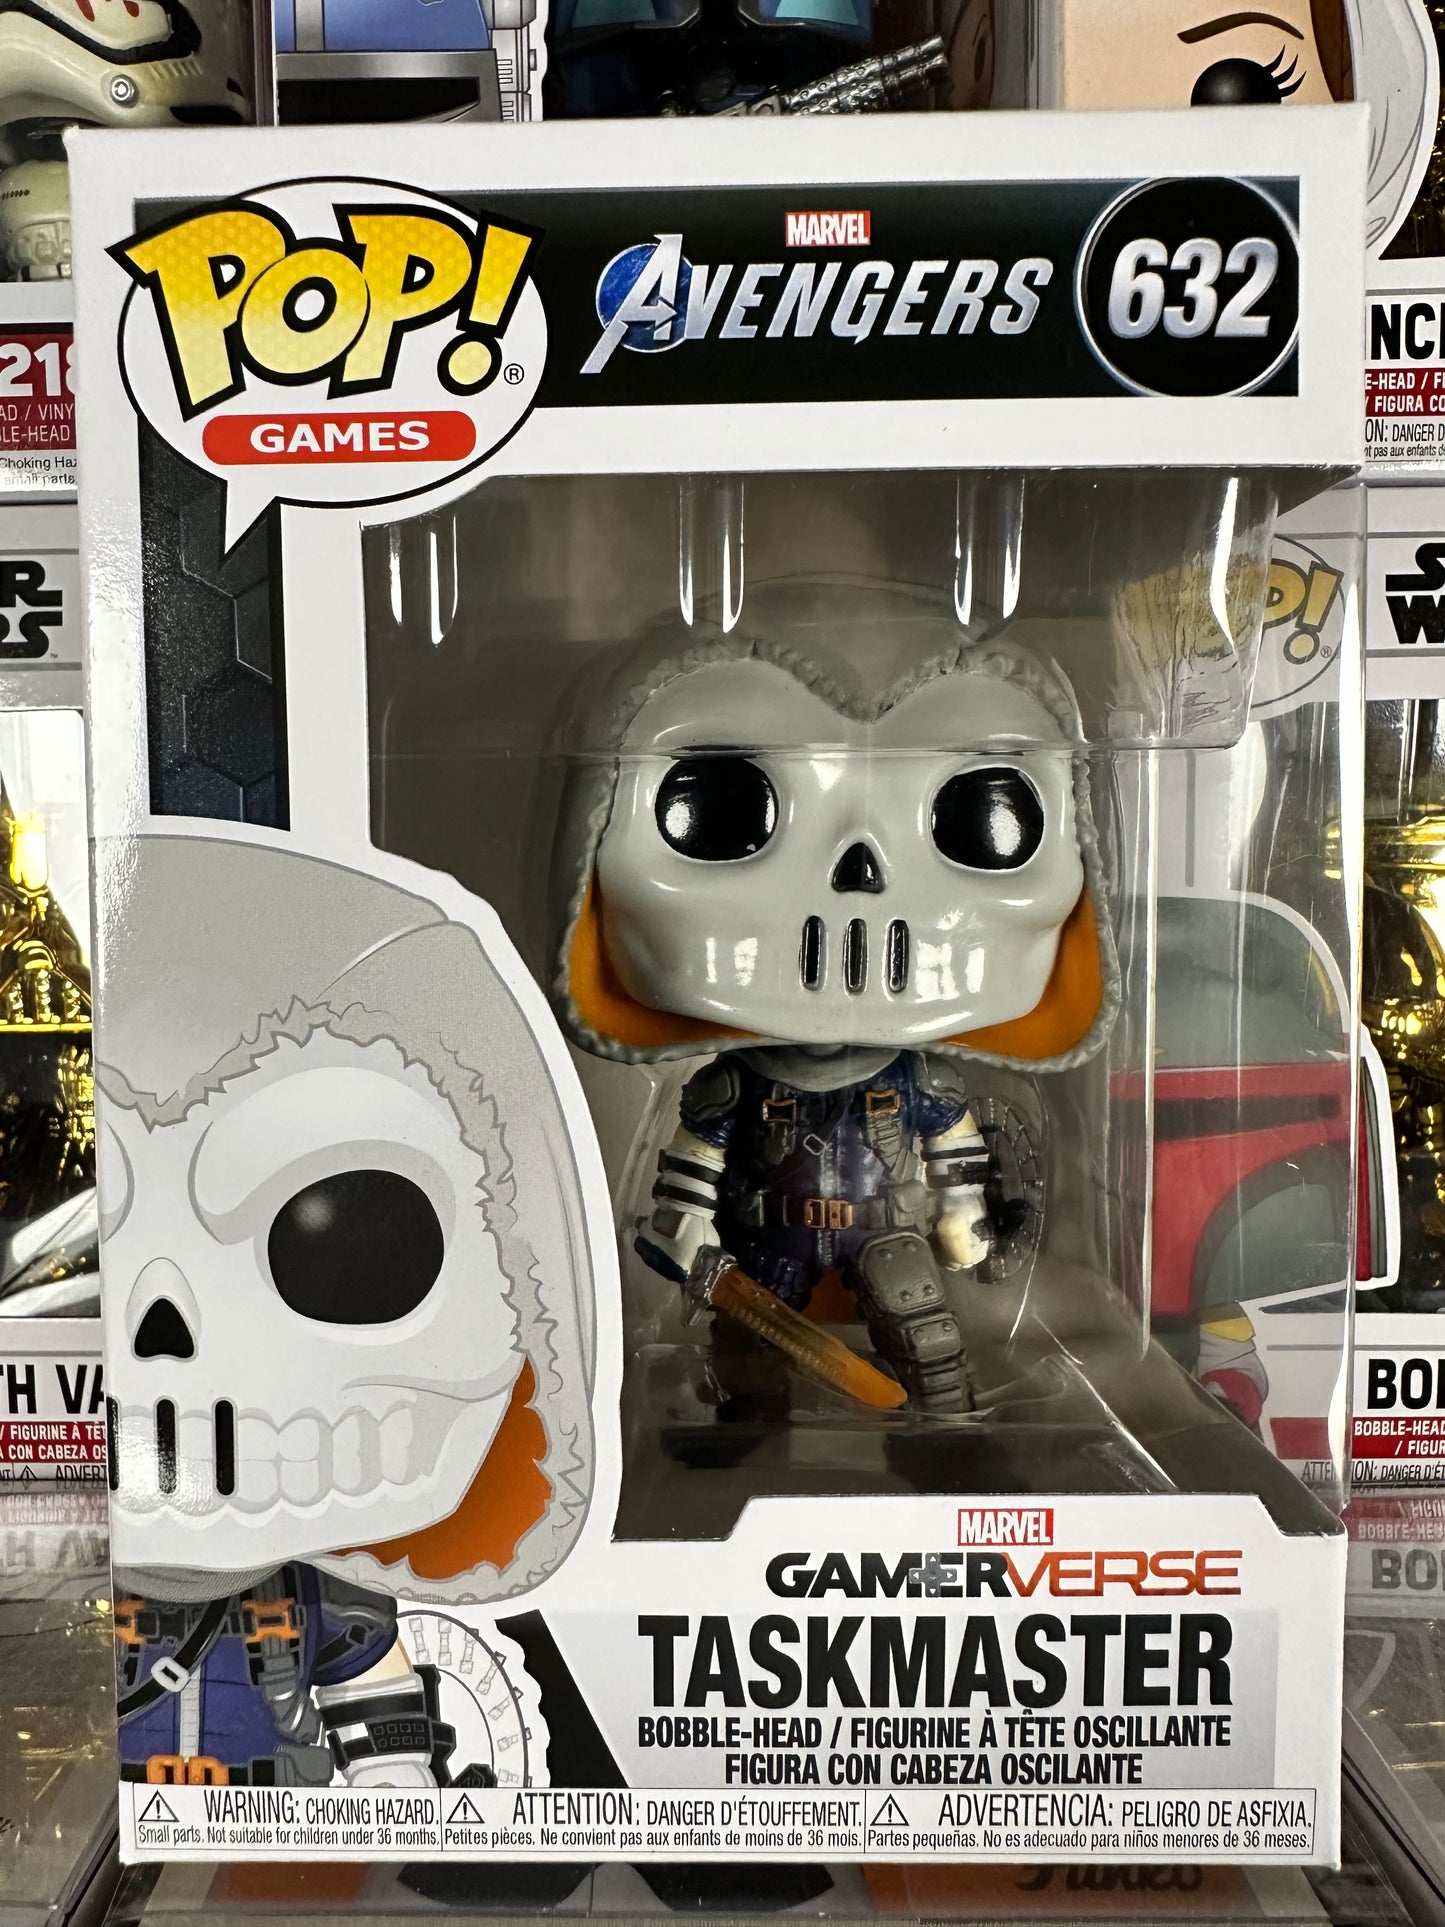 Marvel Avengers - Taskmaster (632)